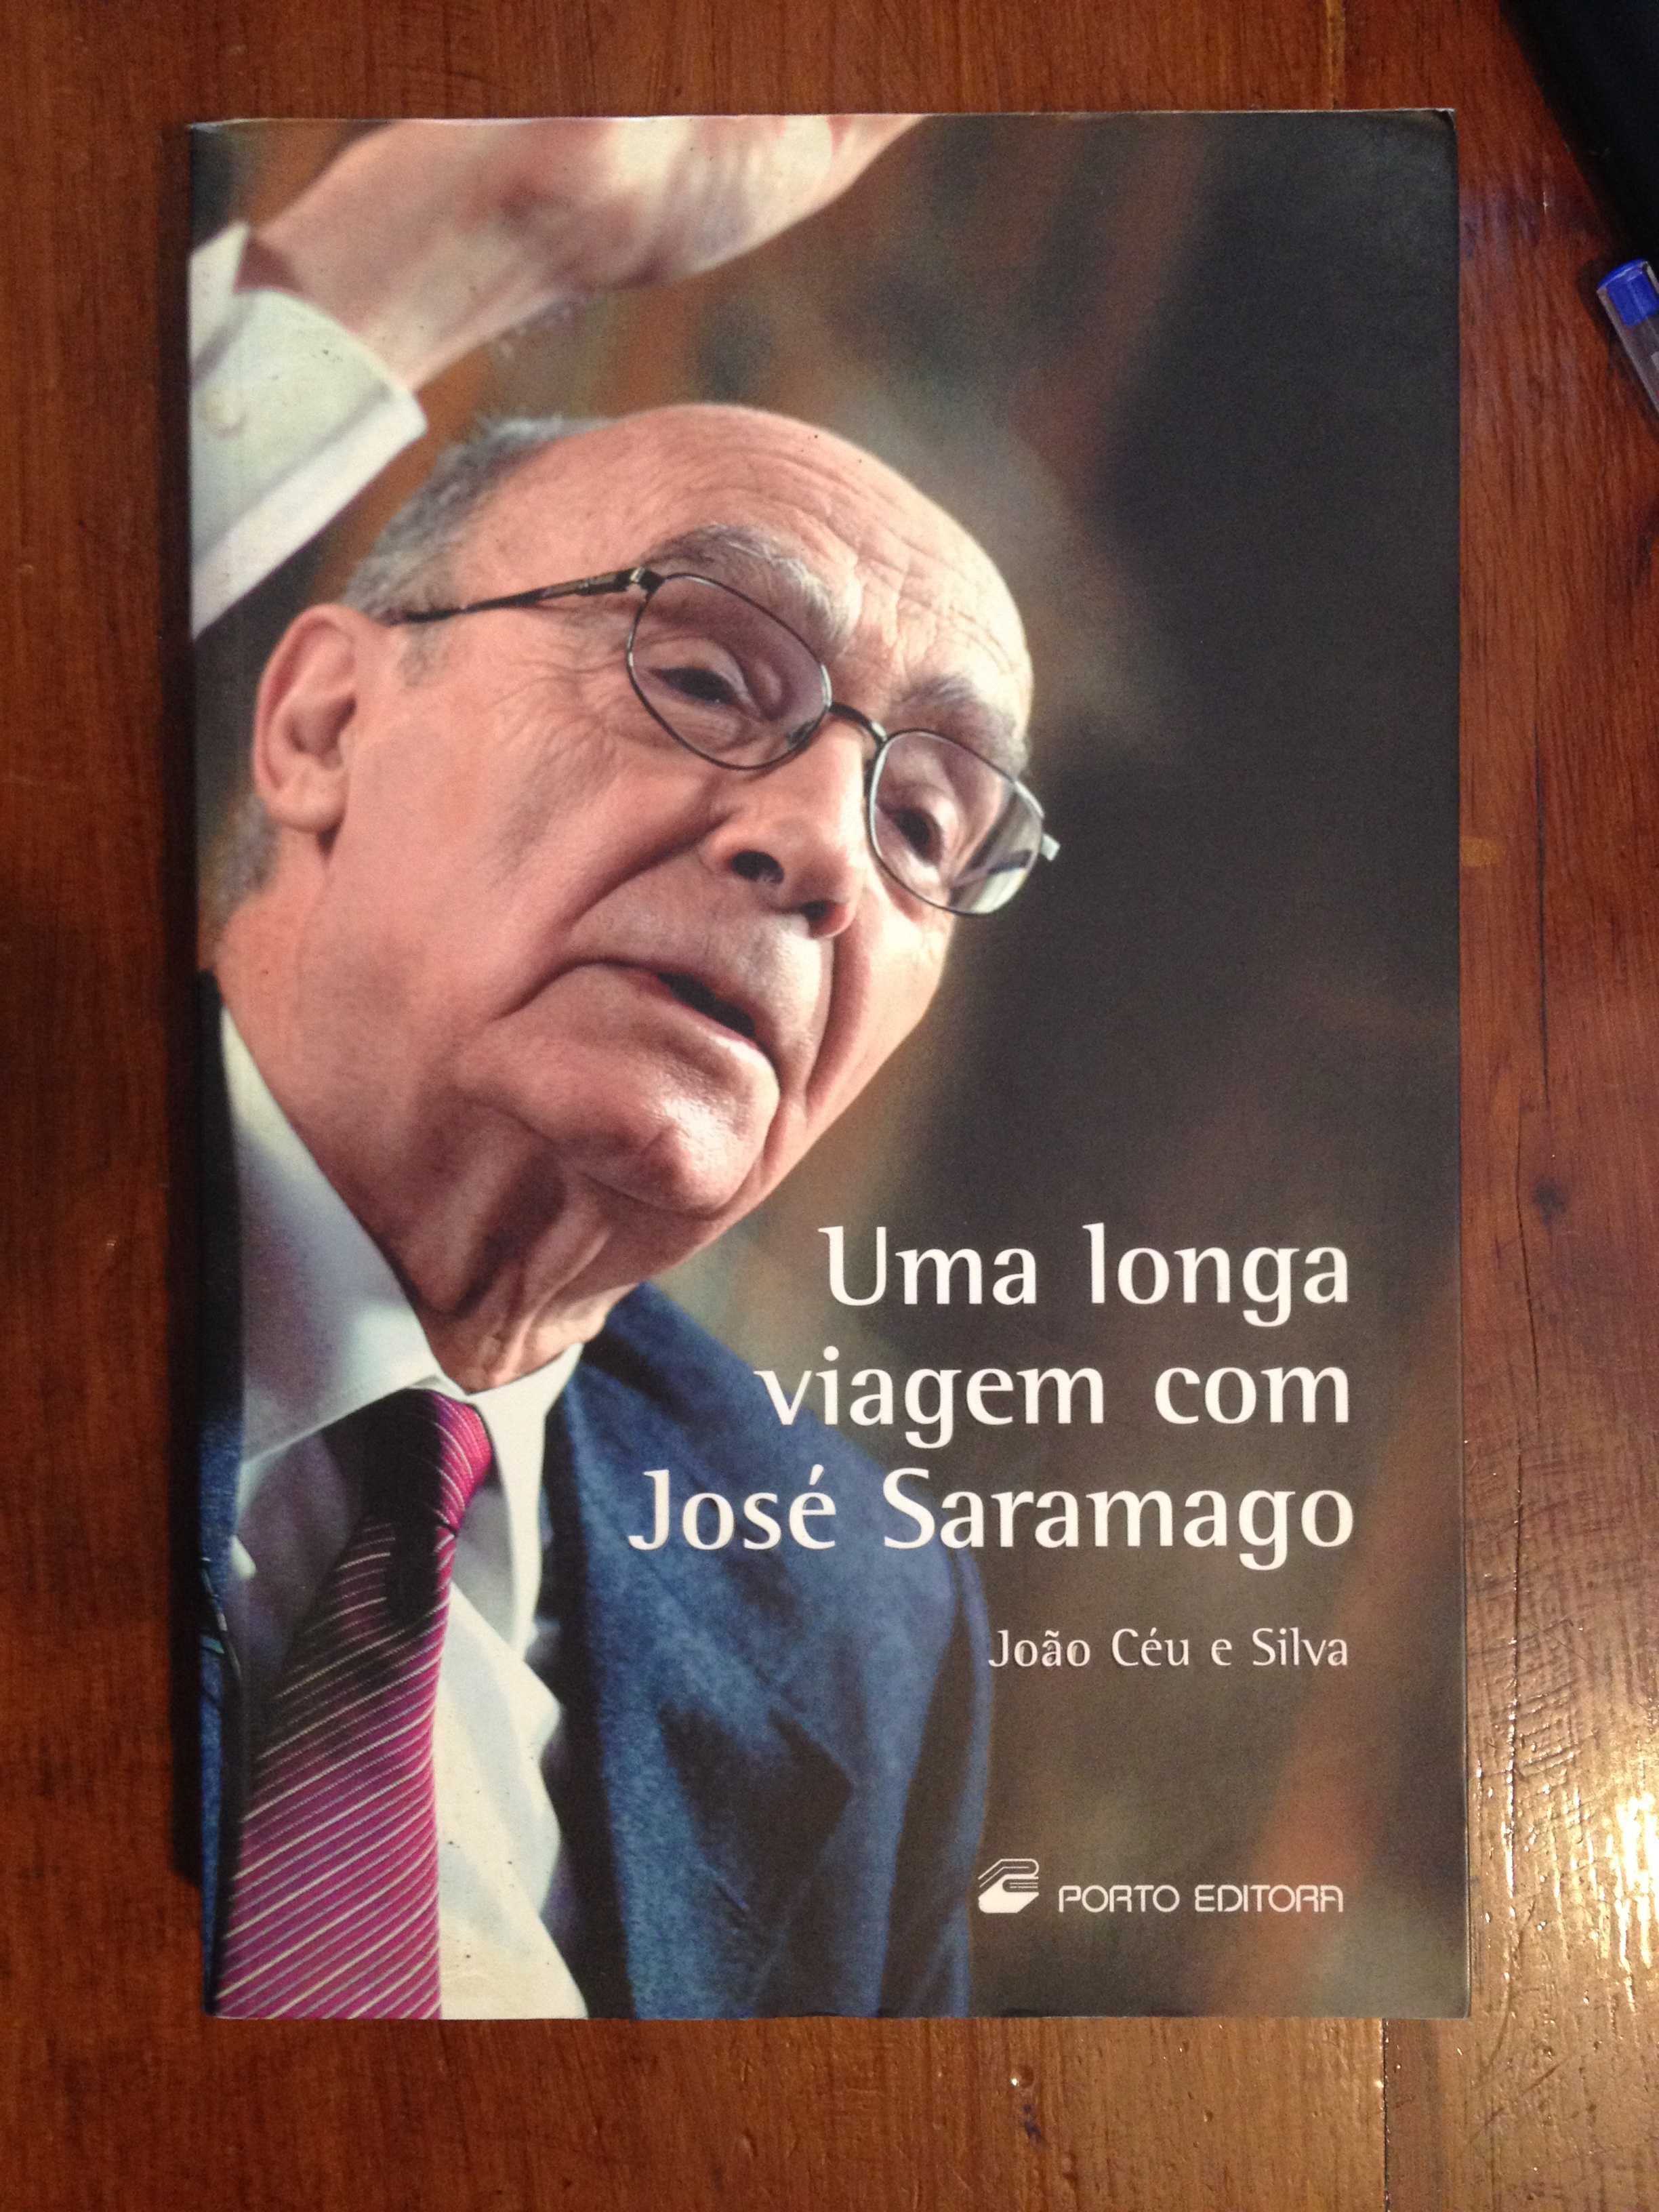 João Céu e Silva - Uma longa viagem com José Saramago